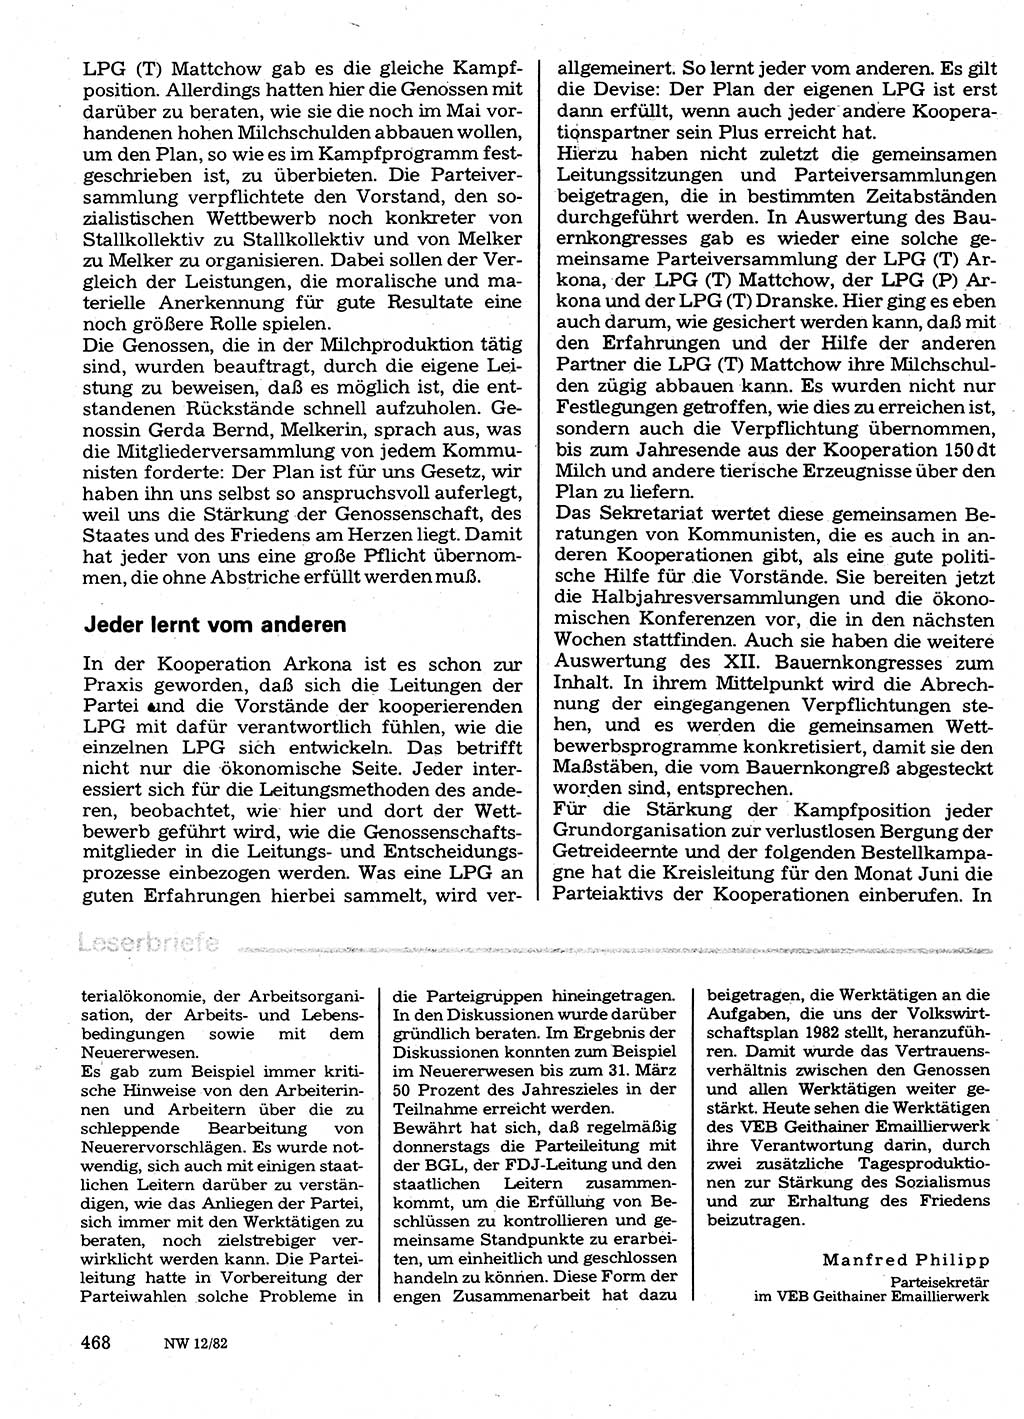 Neuer Weg (NW), Organ des Zentralkomitees (ZK) der SED (Sozialistische Einheitspartei Deutschlands) für Fragen des Parteilebens, 37. Jahrgang [Deutsche Demokratische Republik (DDR)] 1982, Seite 468 (NW ZK SED DDR 1982, S. 468)